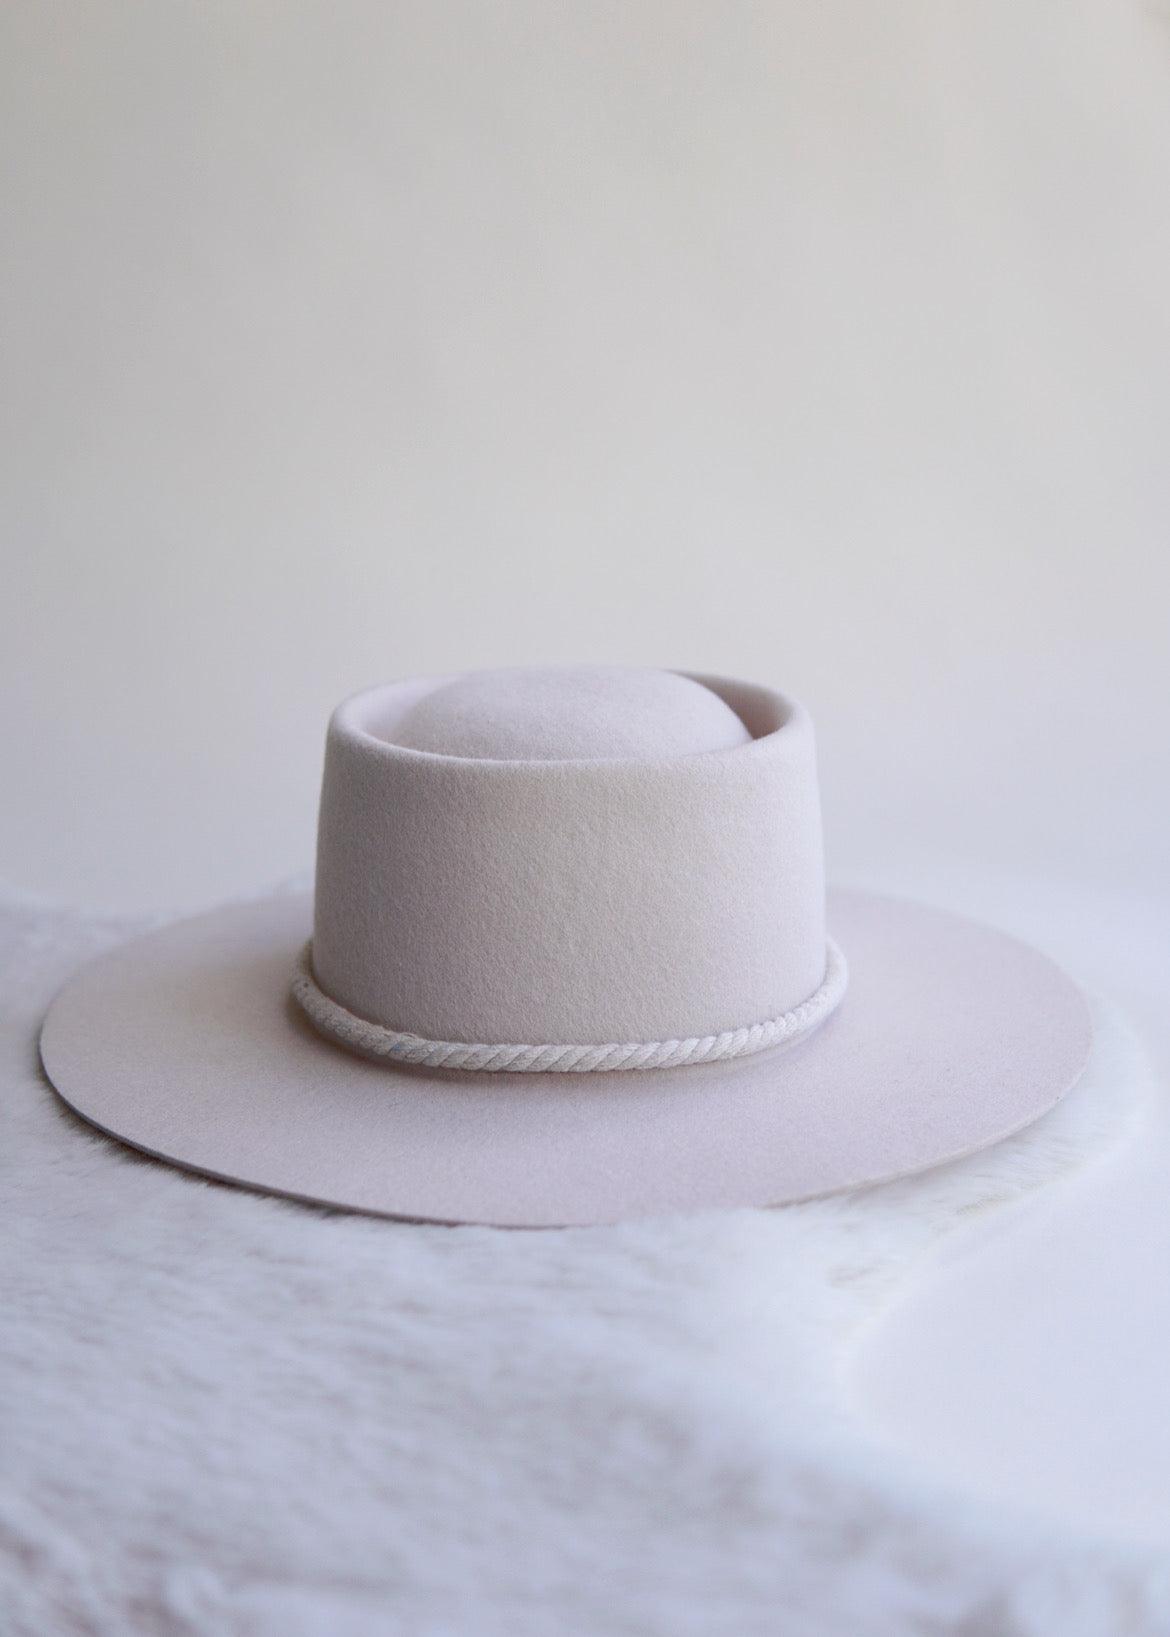 Augustine Hat Co. - Wide Brim Felt Hat